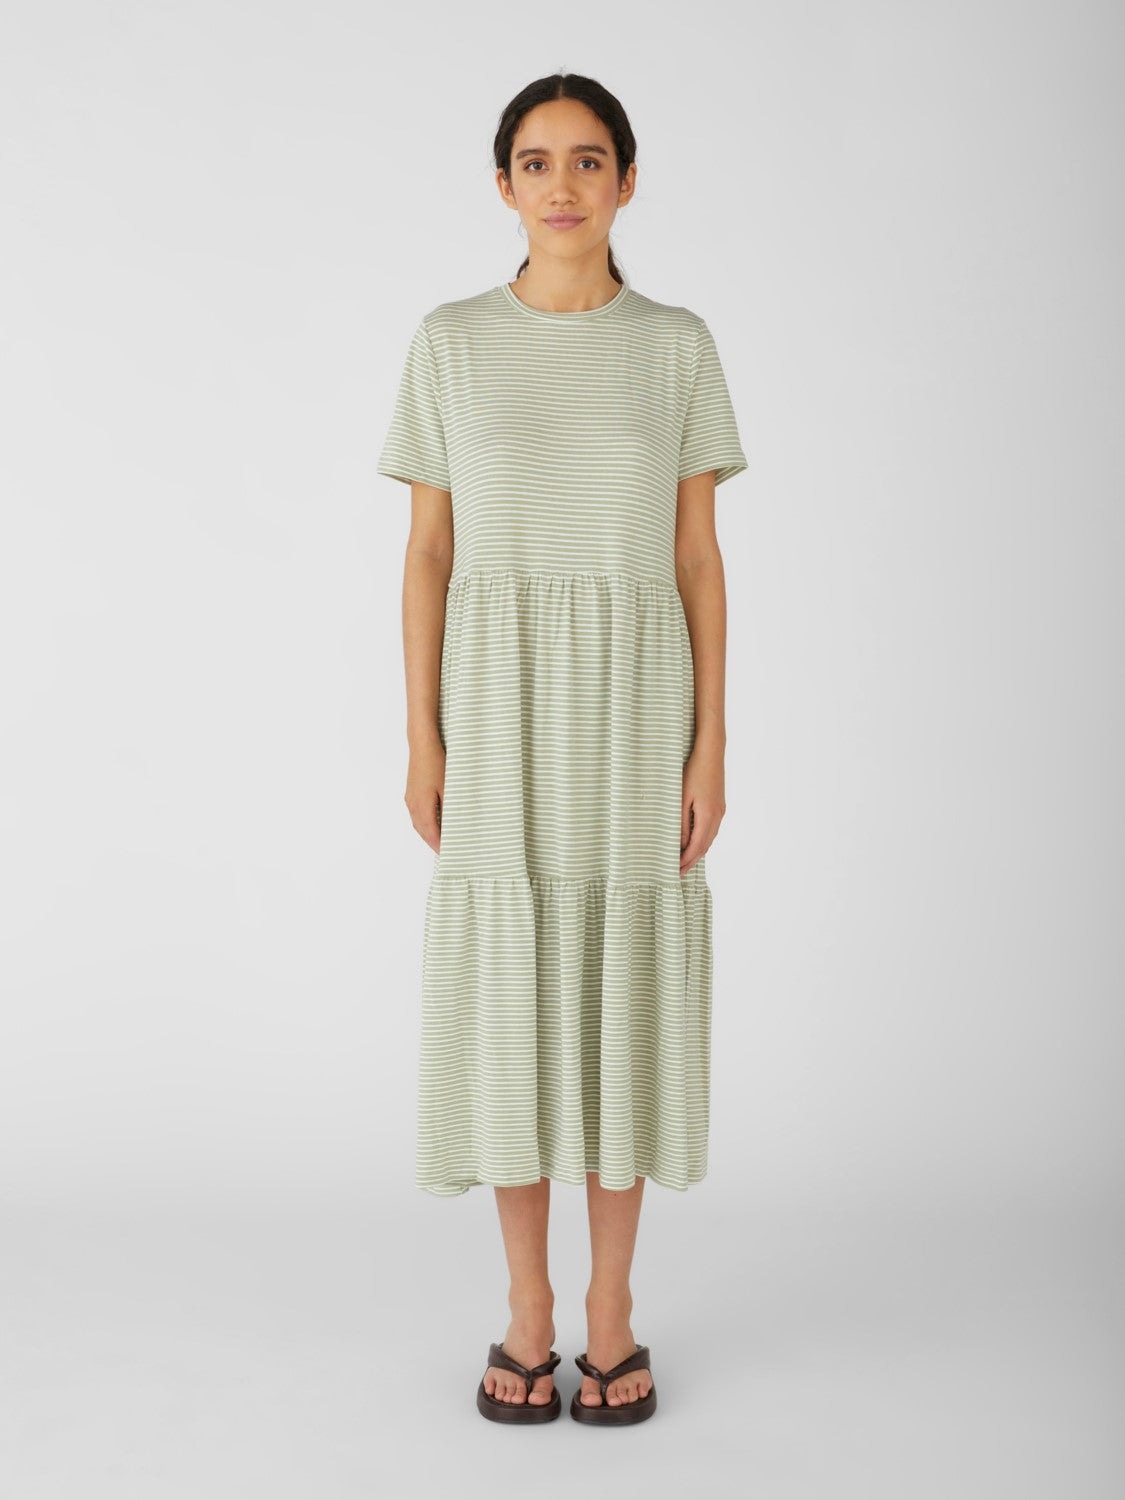 Stephanie Smock Dress (Seagrass/White)